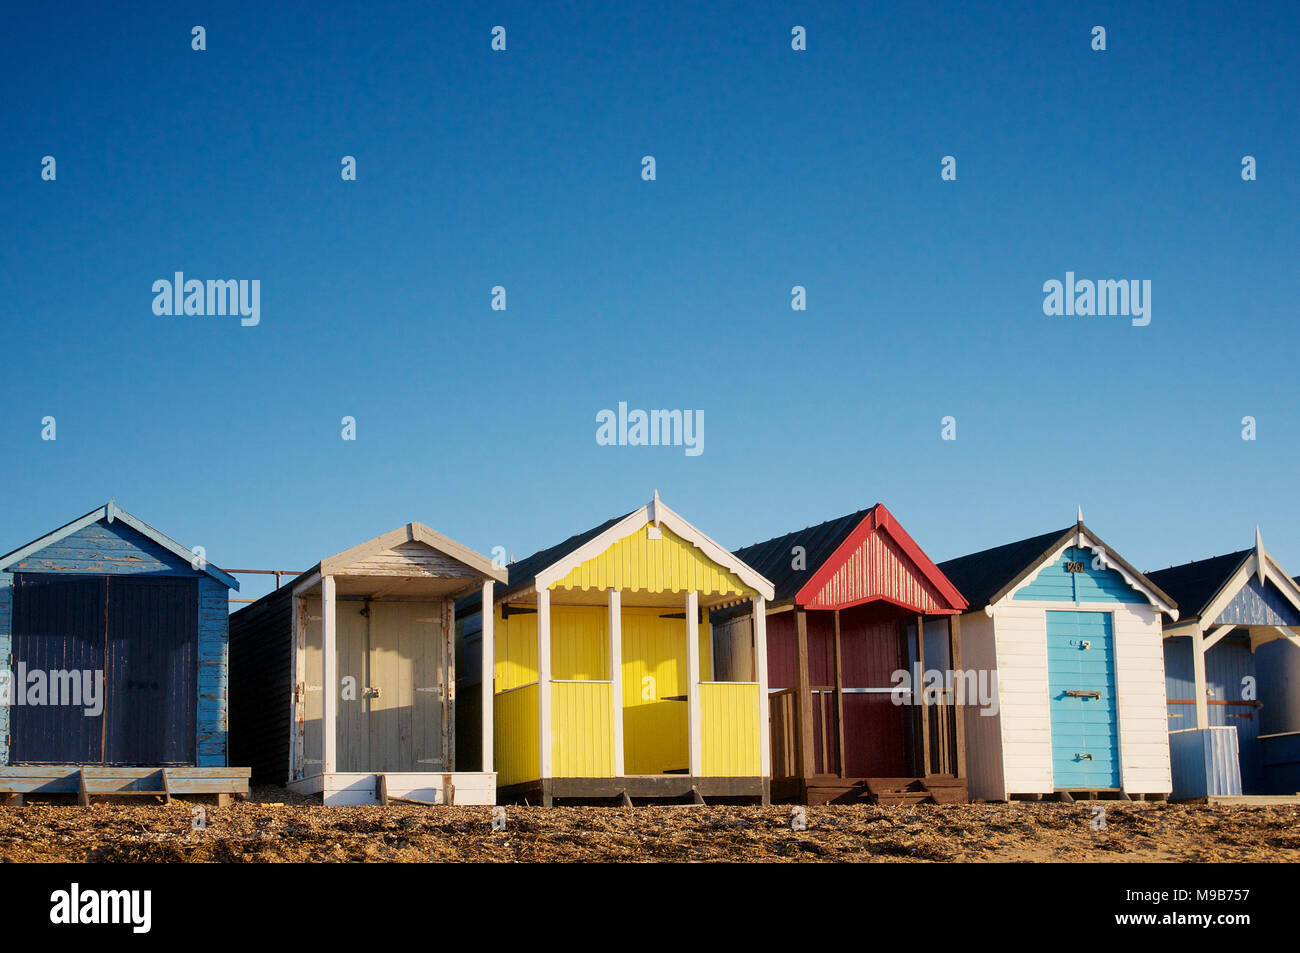 Eine Reihe von bunten Badekabinen am Strand von Thorpe Bay, Southend-on-Sea, Essex, Großbritannien Sonne sonnig Sonnenschein Credit: Ben Rektor/Alamy Stock Foto Stockfoto